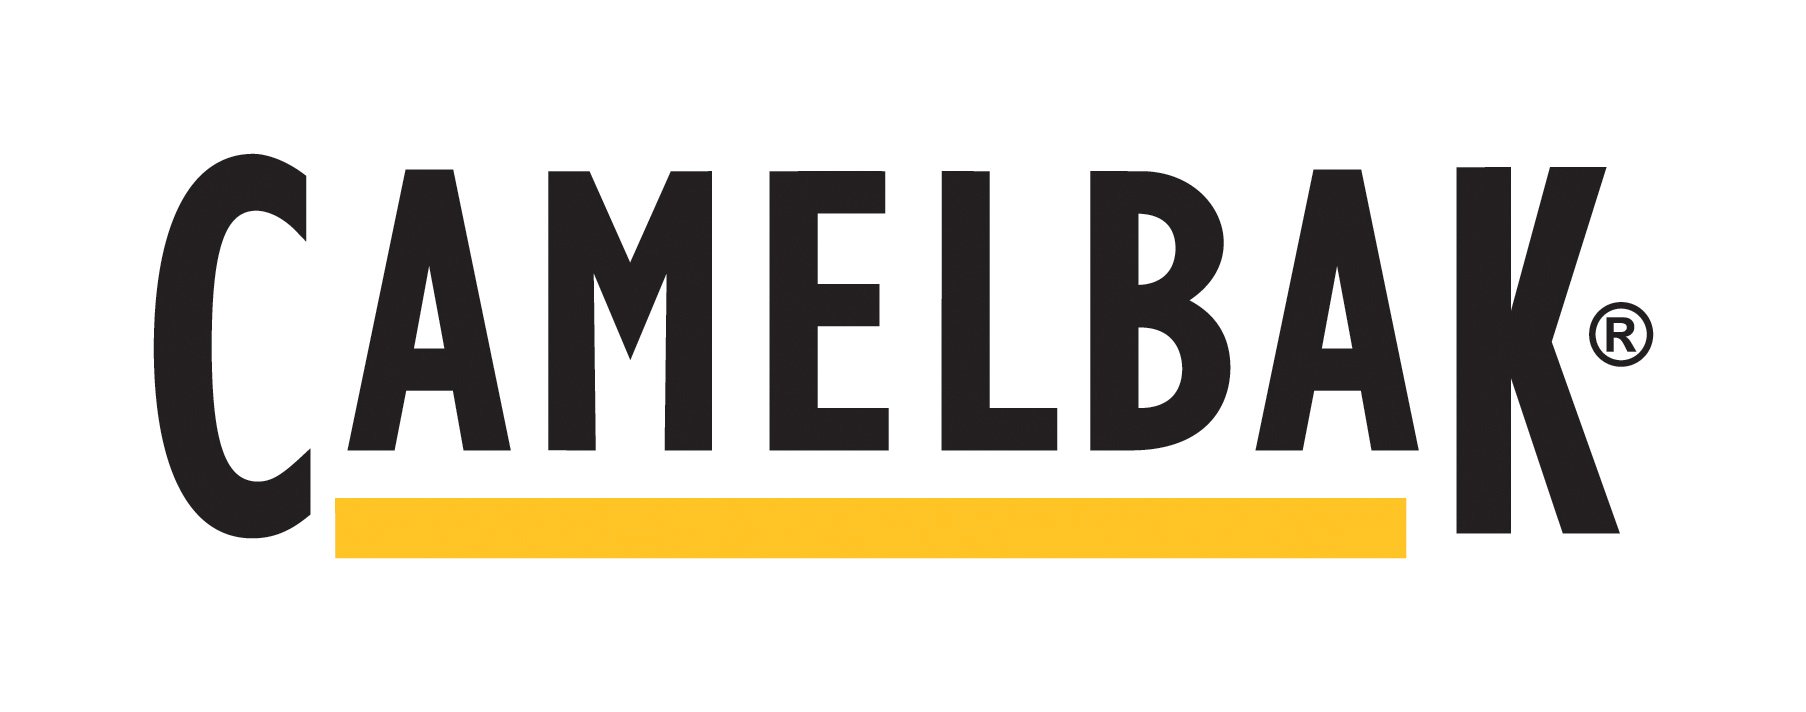 camelbak-logo.jpeg